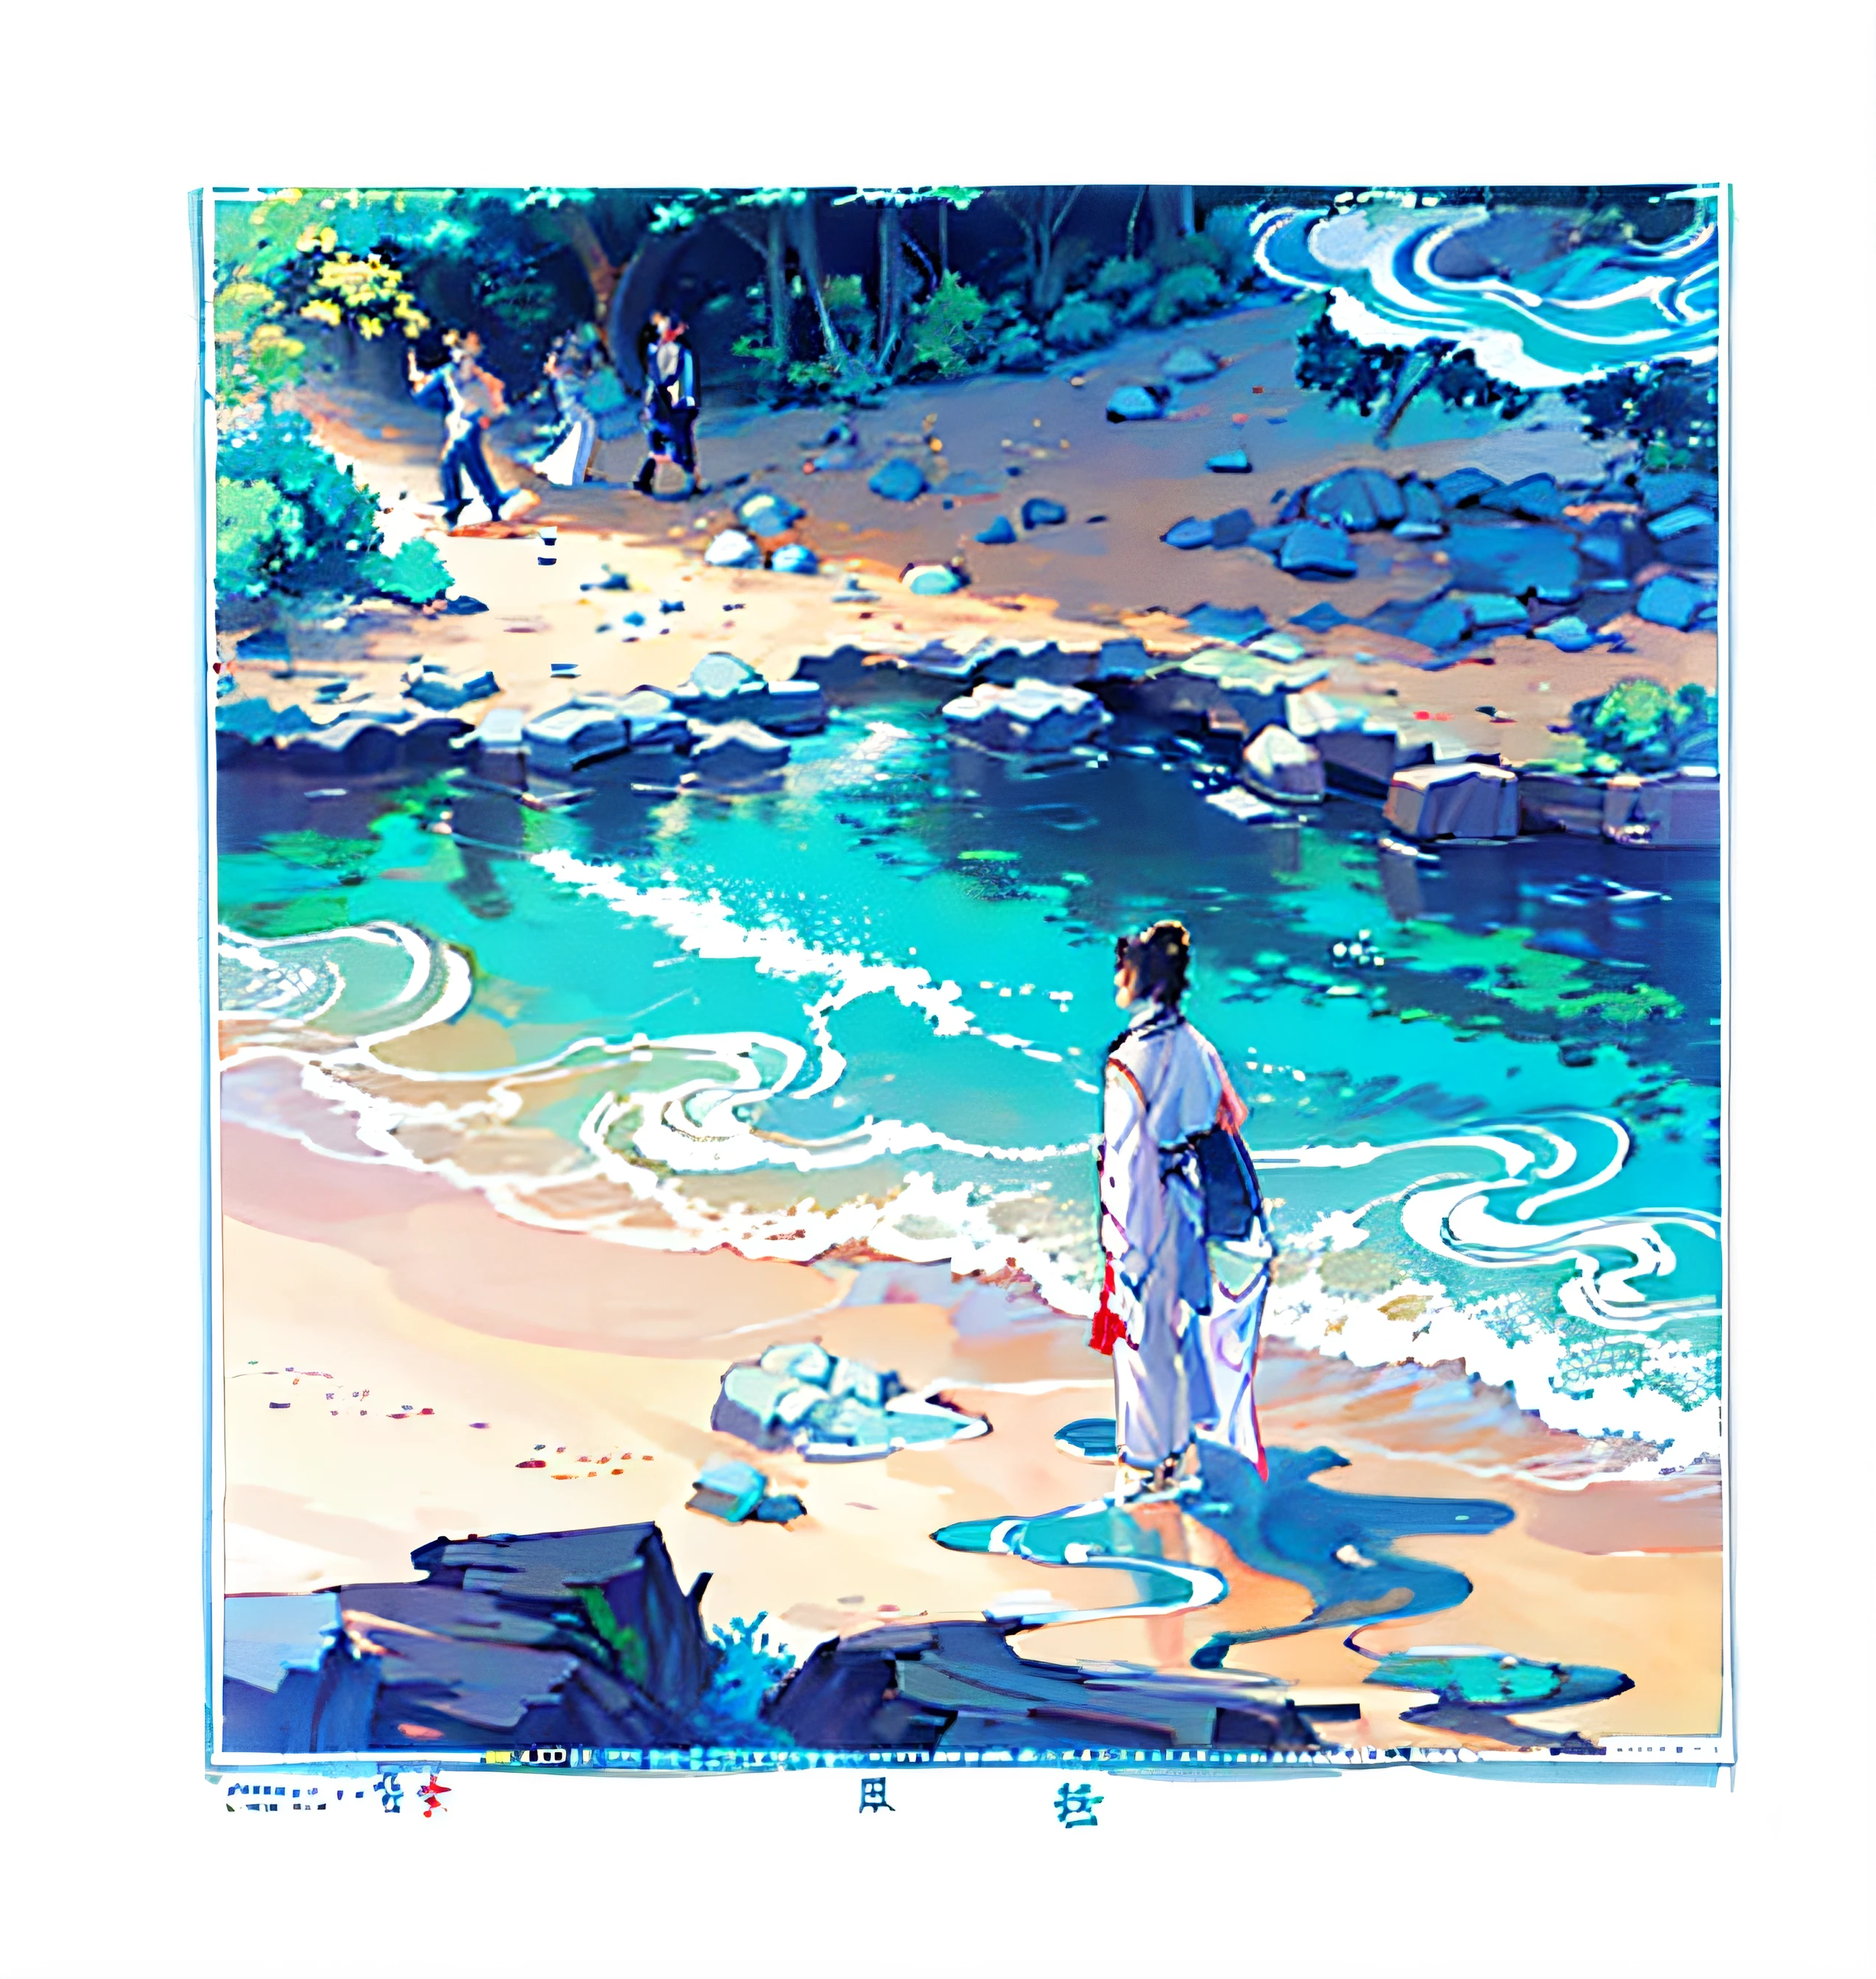 Desenhe um homem parado na água segurando uma prancha de surf, Chiba Yuda, Taoísmo, inspirado em Fu Baoshi, Jin Shan, ela está andando em um rio, autor：Shin Yoon Bok, feng shu, ilustração colorida, de pé em um rio raso, Zhang Daqian, autor：Guan Daosheng